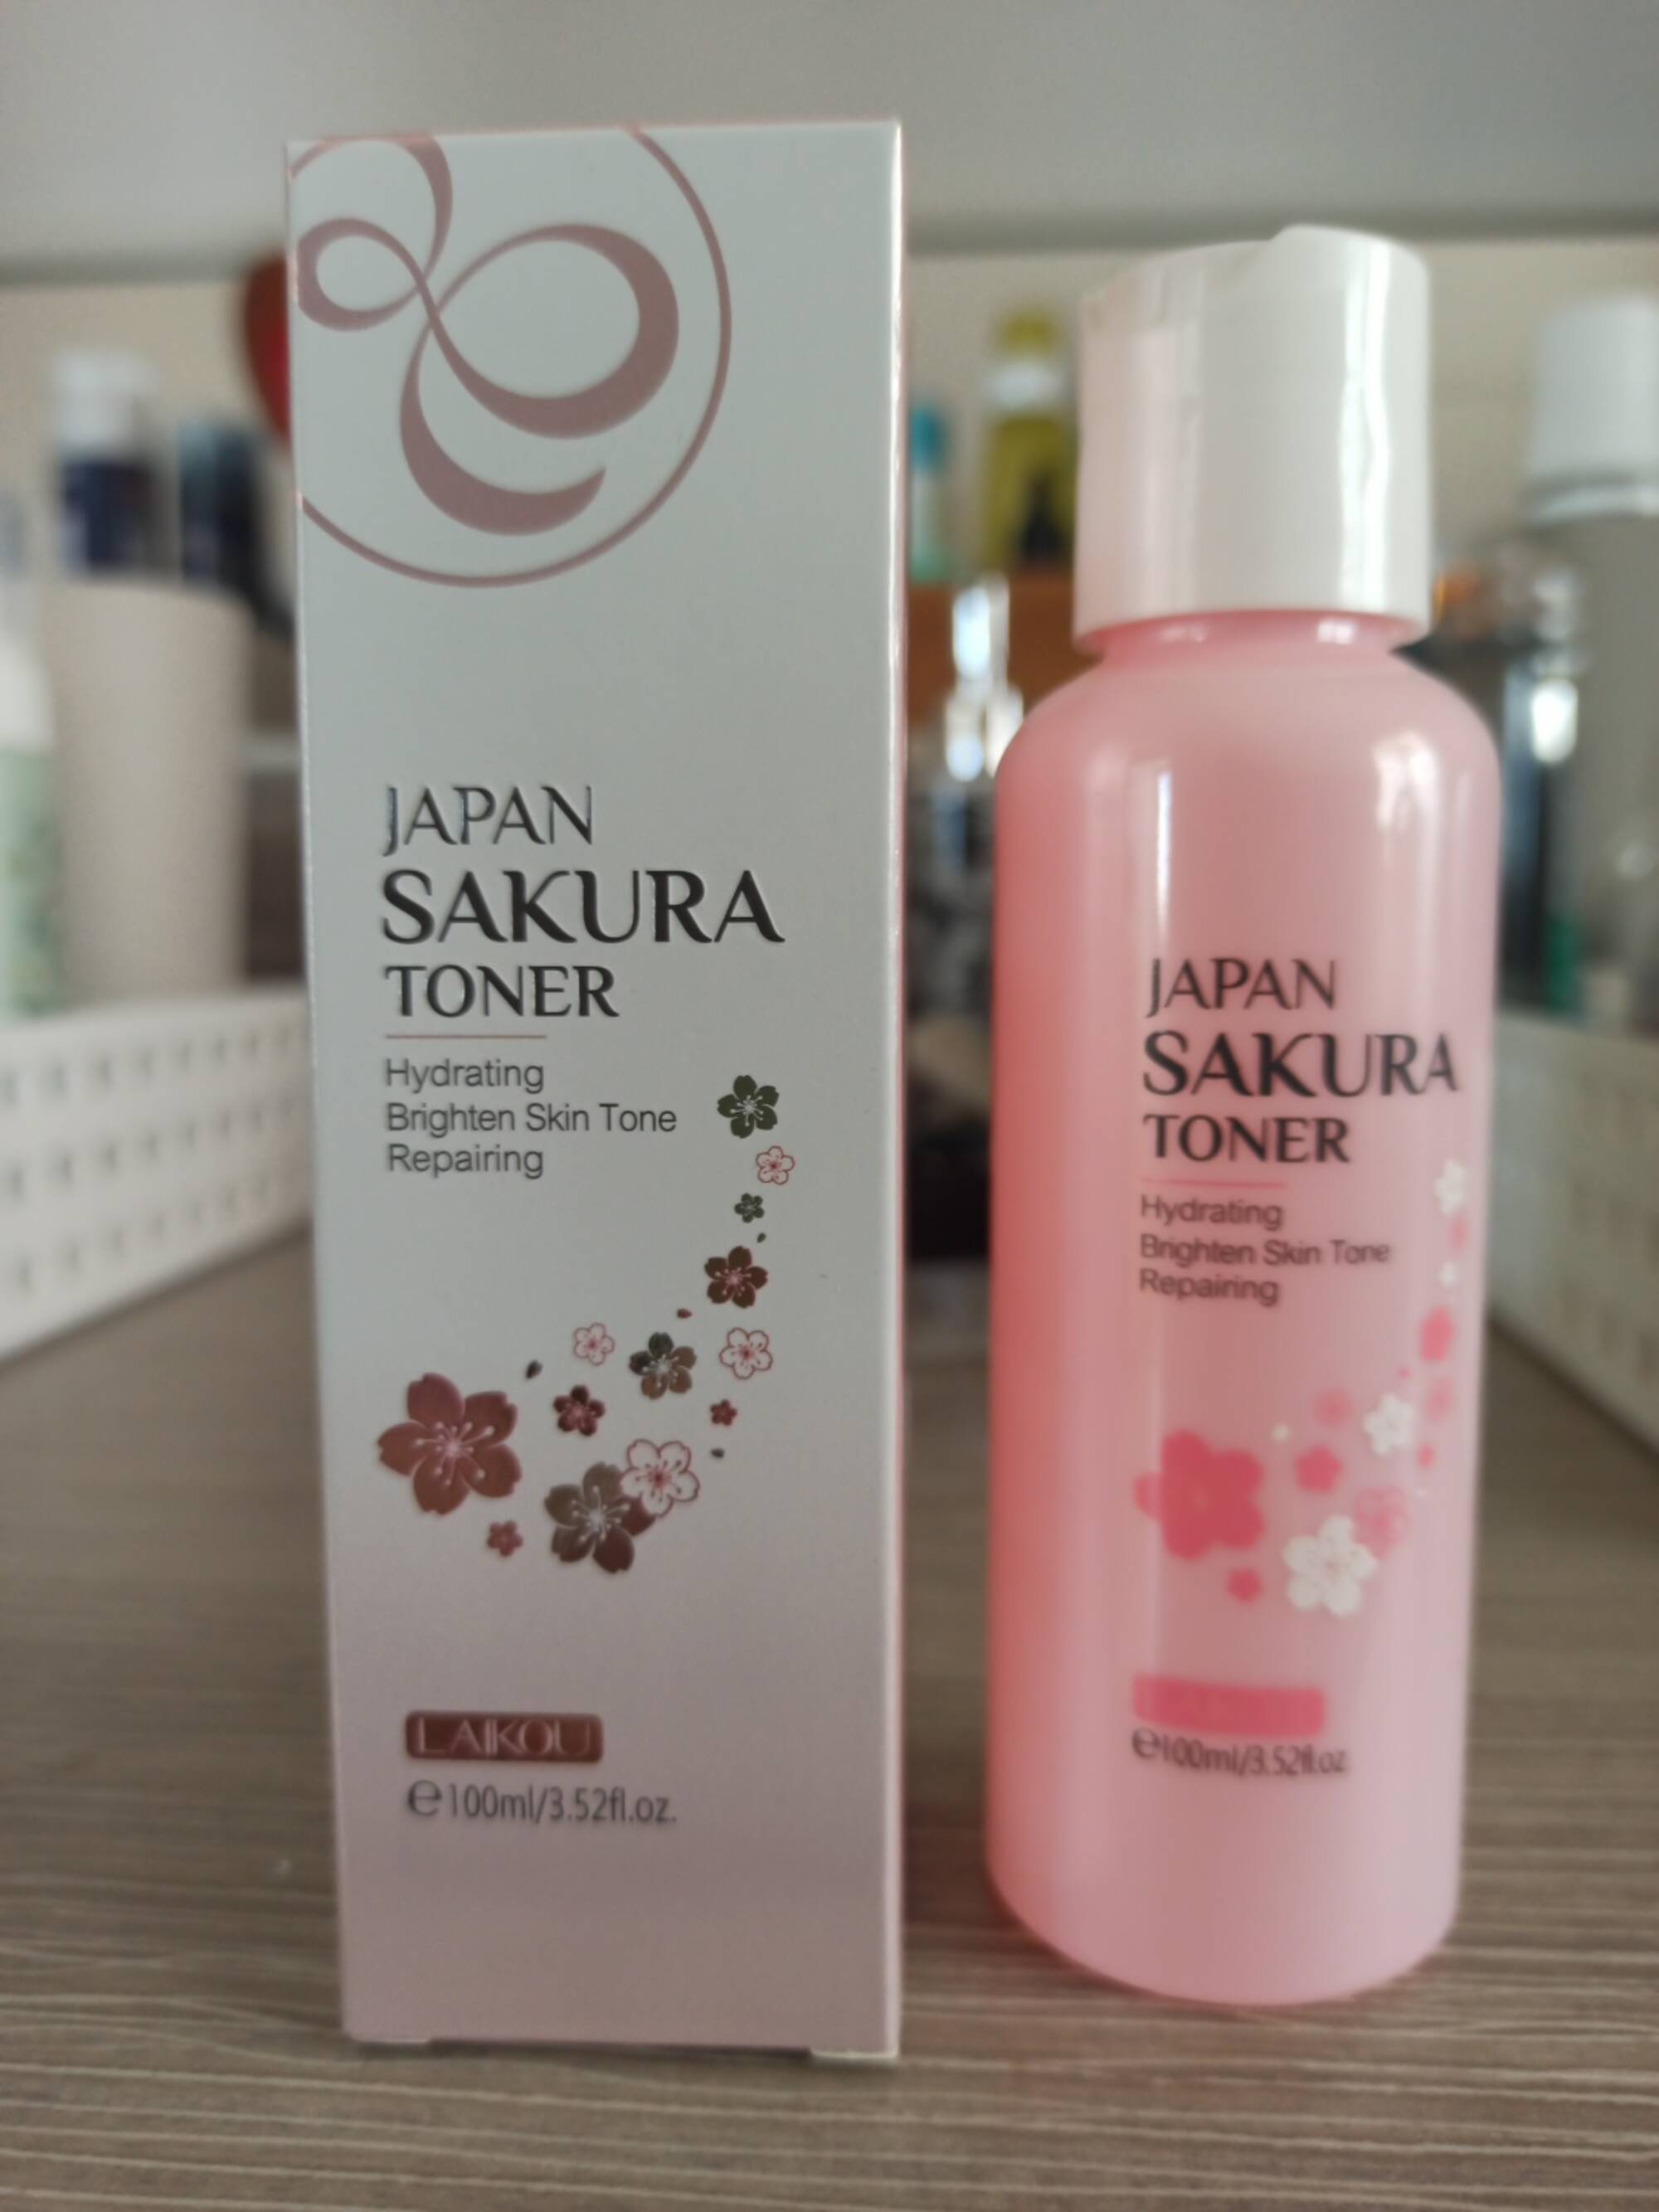 LAIKOU - Japan sakura toner - Hydrating brighten skin tone repairing